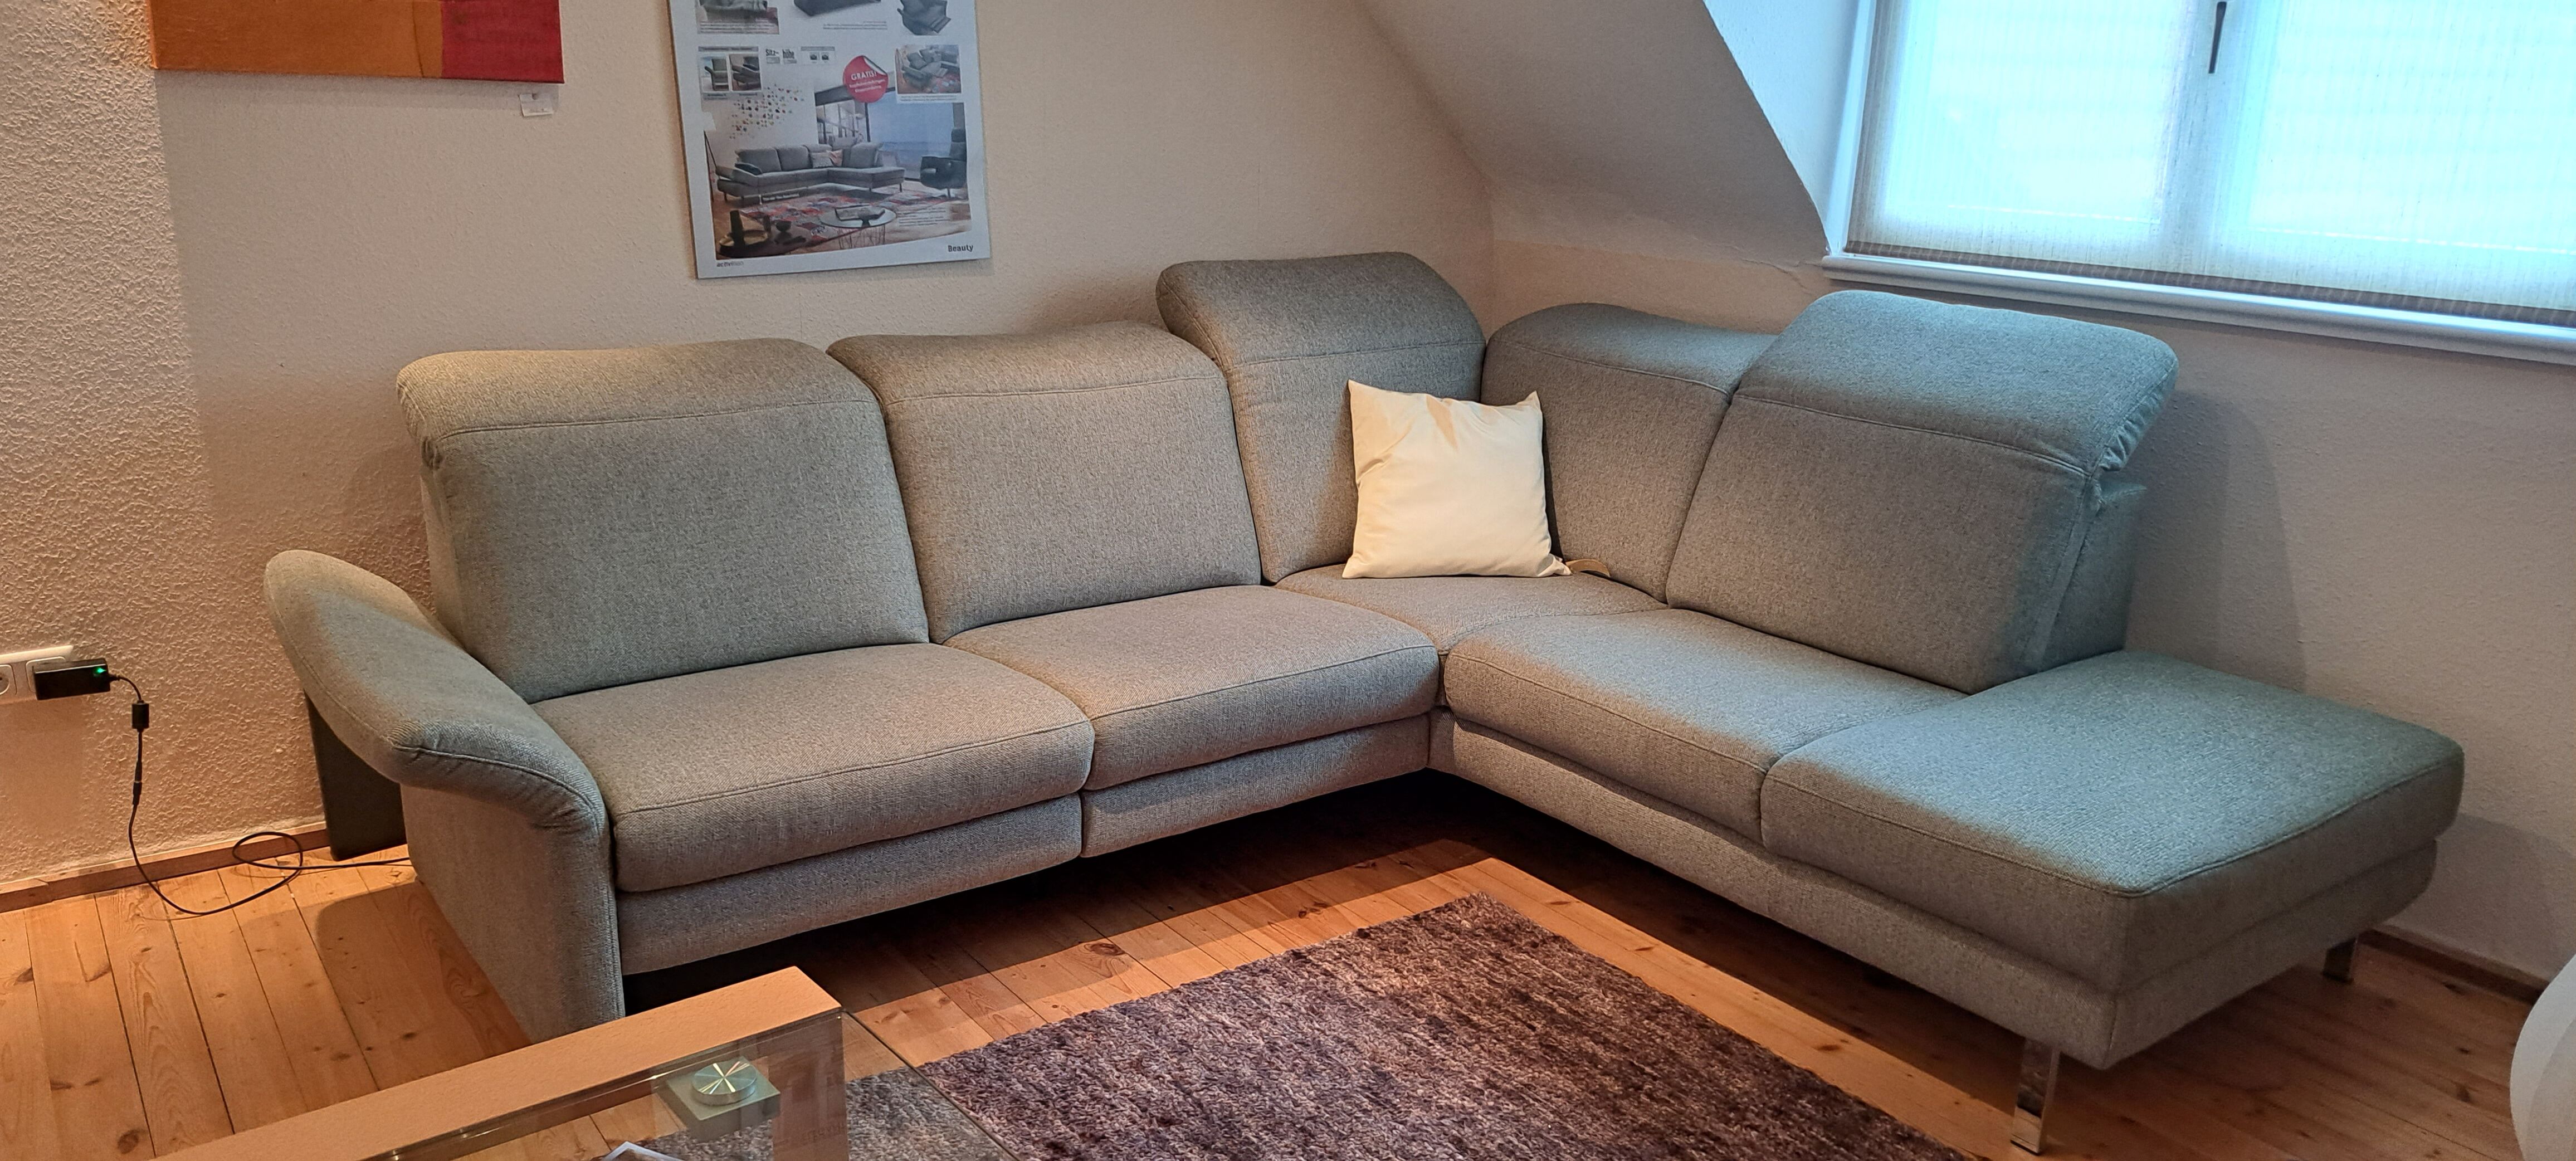 Angebote Möbel & Einrichtung – günstige Möbelstücke, Wohndeko & Polstermöbel | Kitzingen